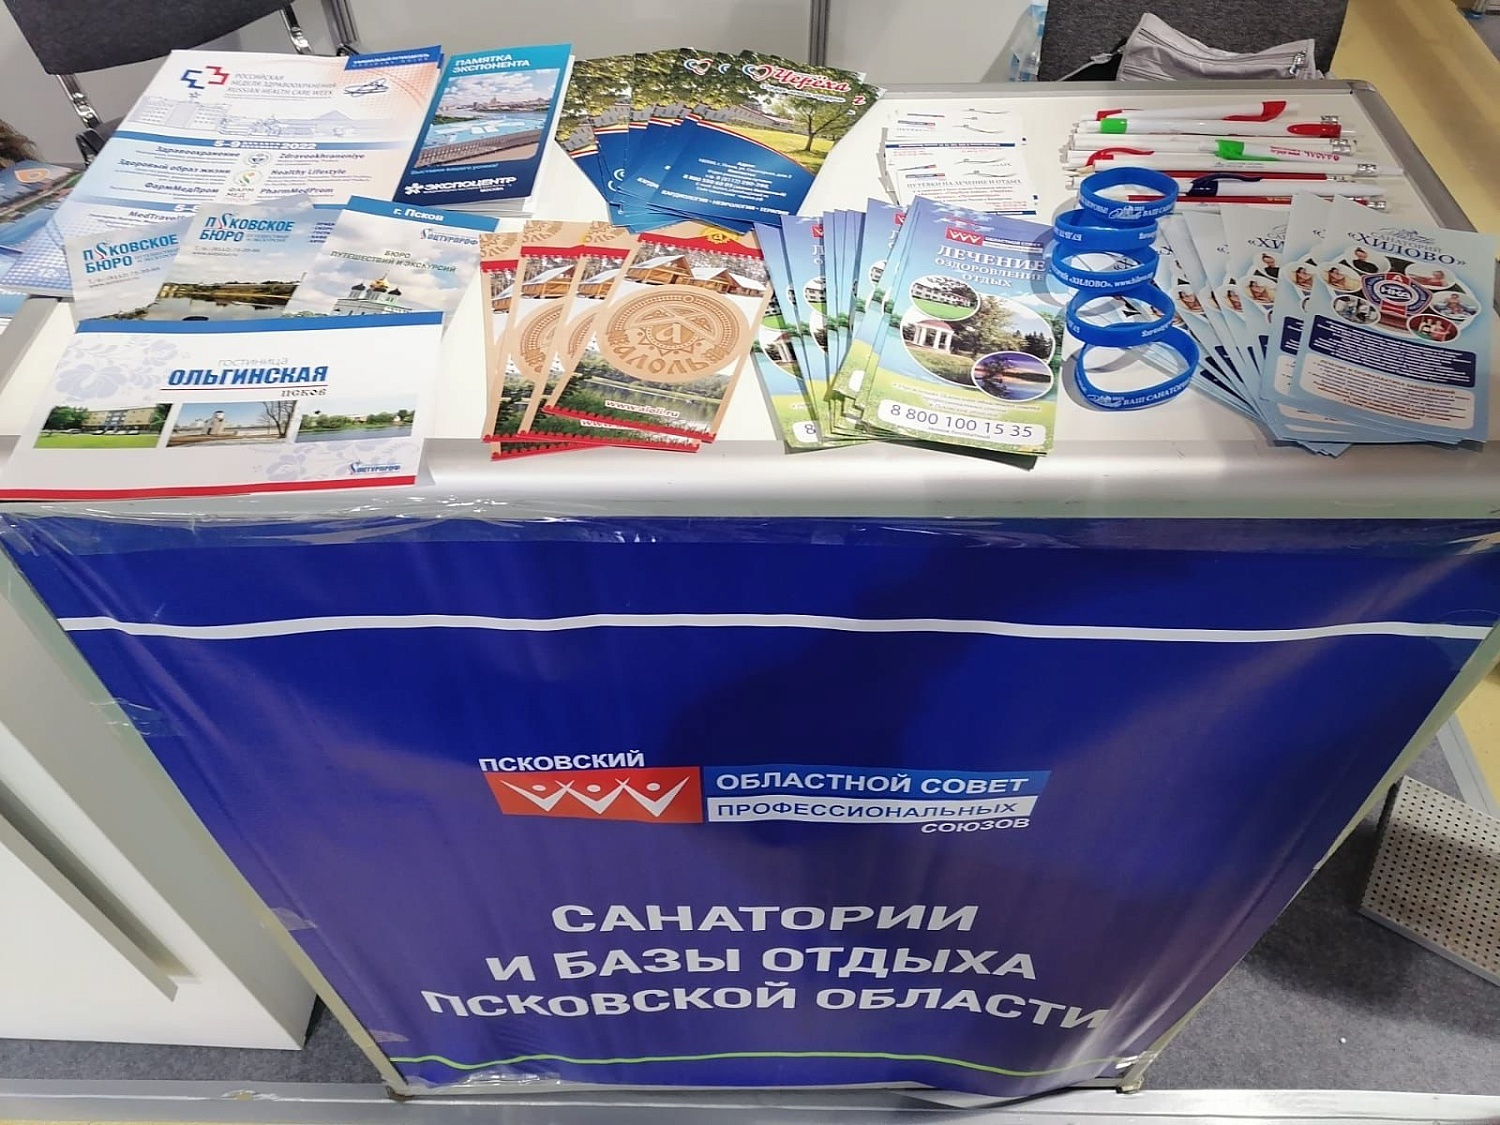 Делегация от псковских профсоюзных здравниц и баз  отдыха принимает участие в профильной выставке в Москве